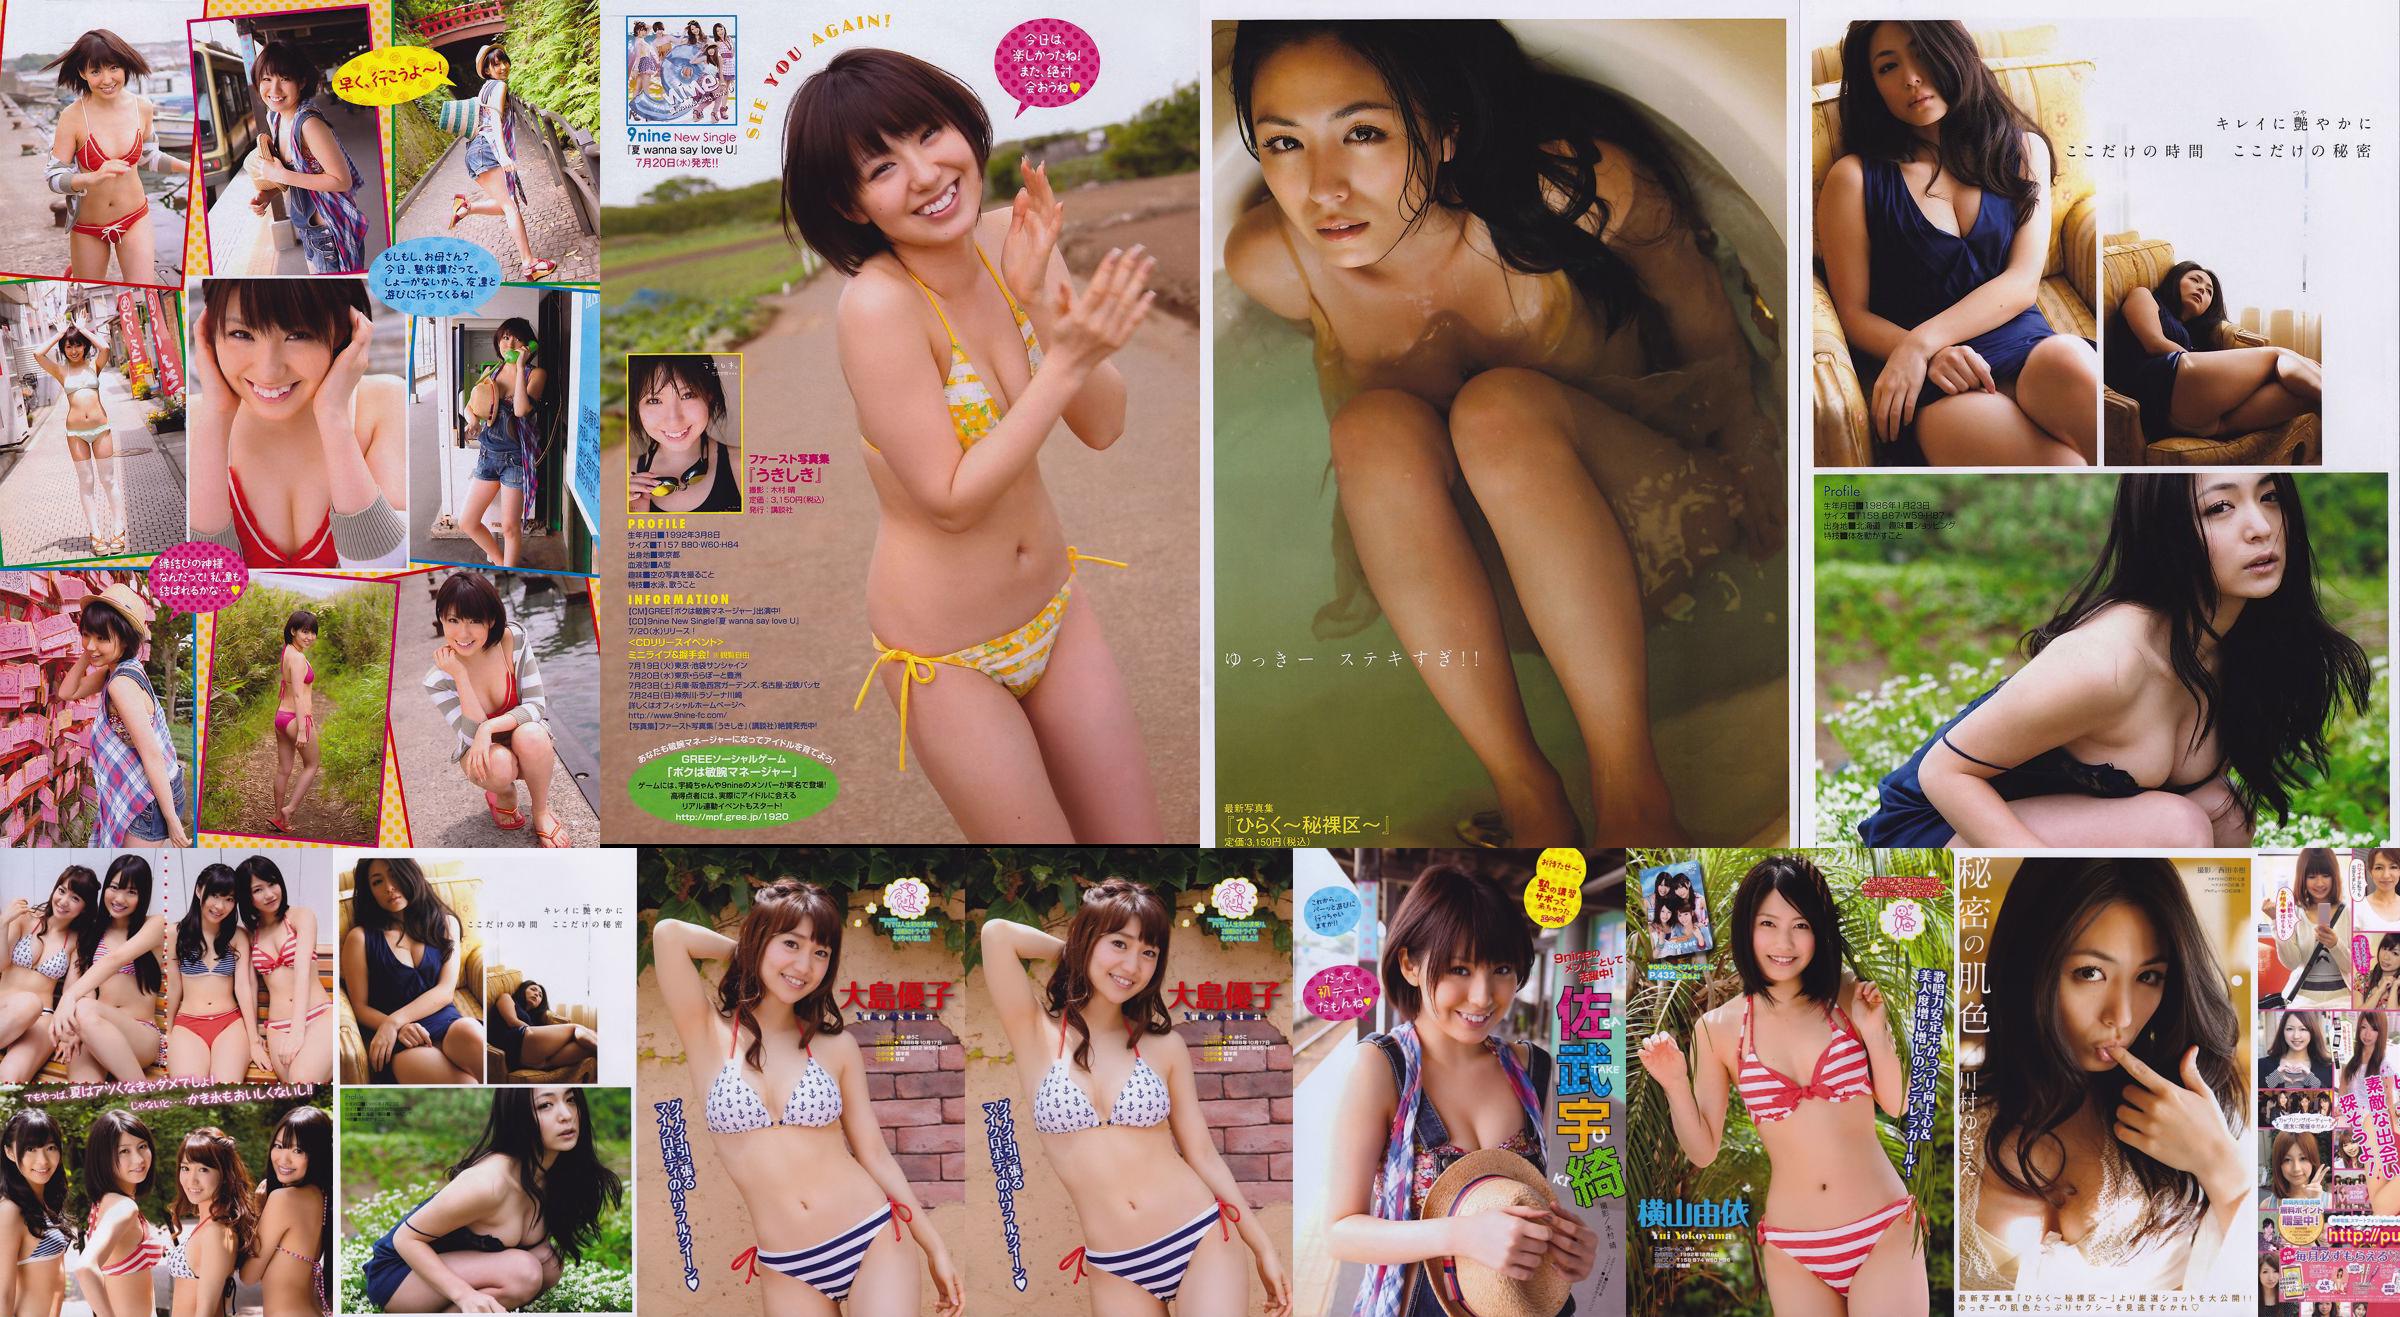 [Young Magazine] Not yet Kawamura ゆきえ Satake Uki 2011 No.32 Photo Magazine No.830c2d Page 1